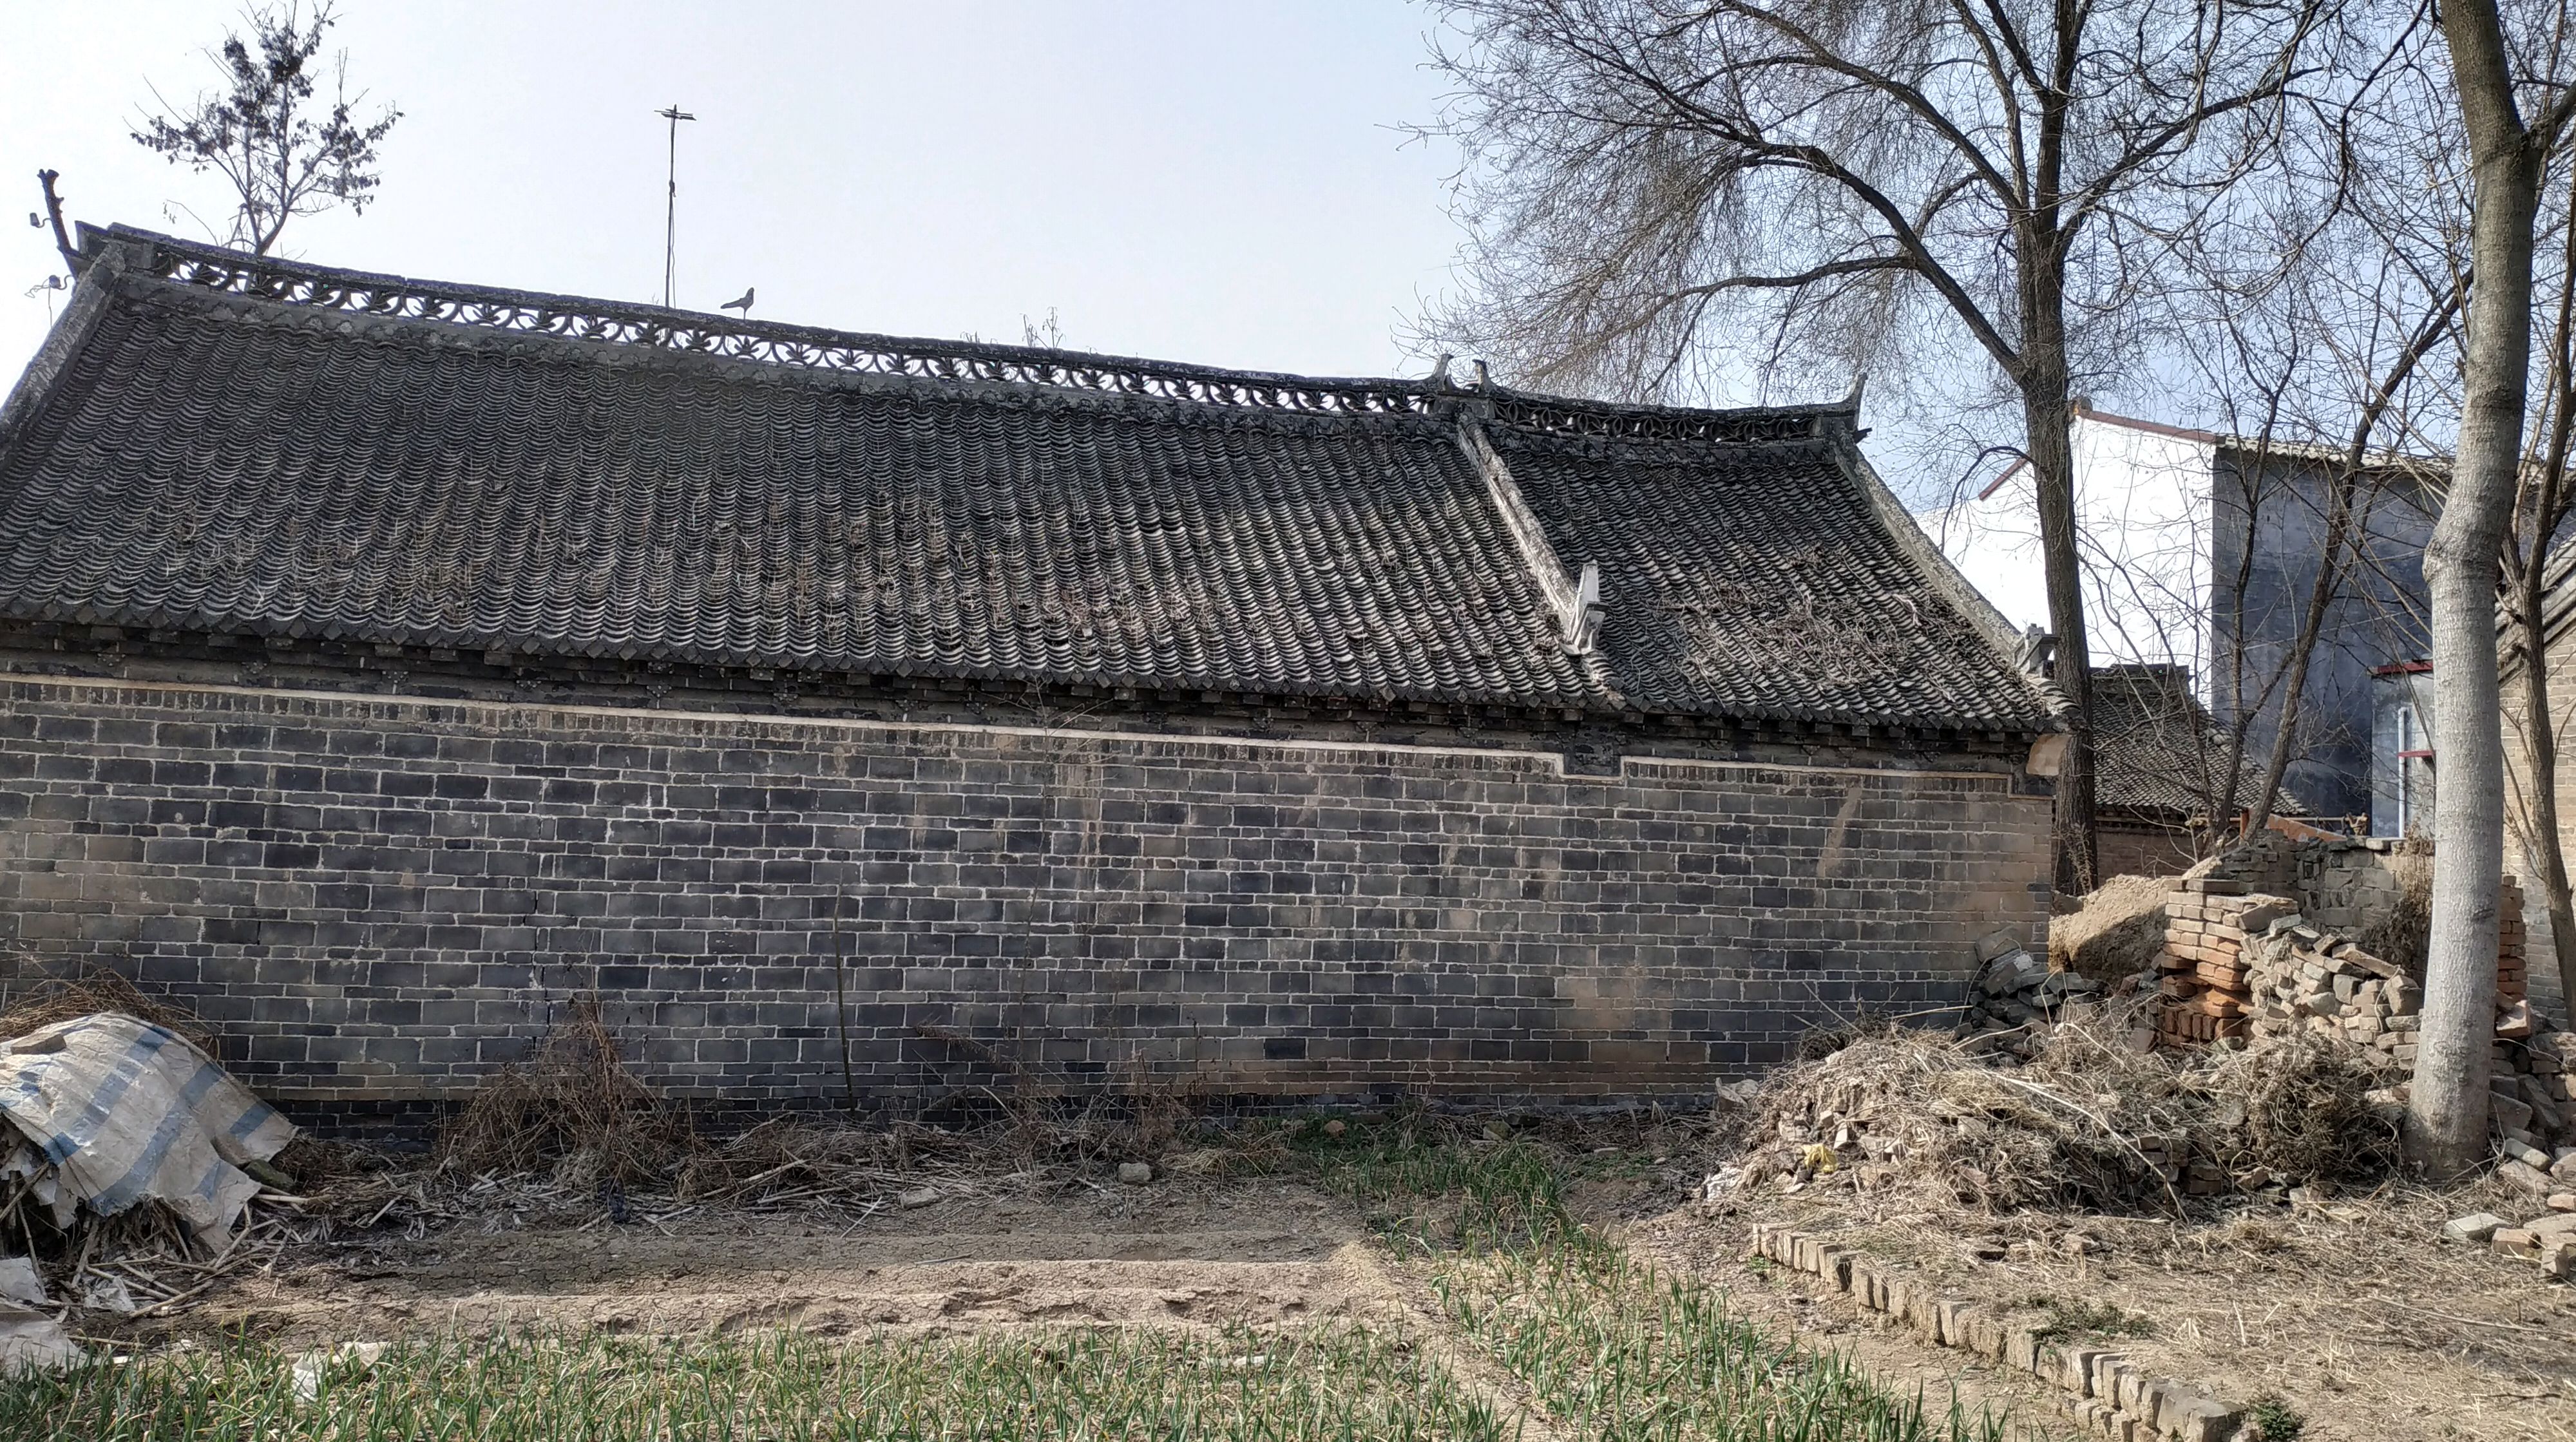 阜阳农村老房子图片图片